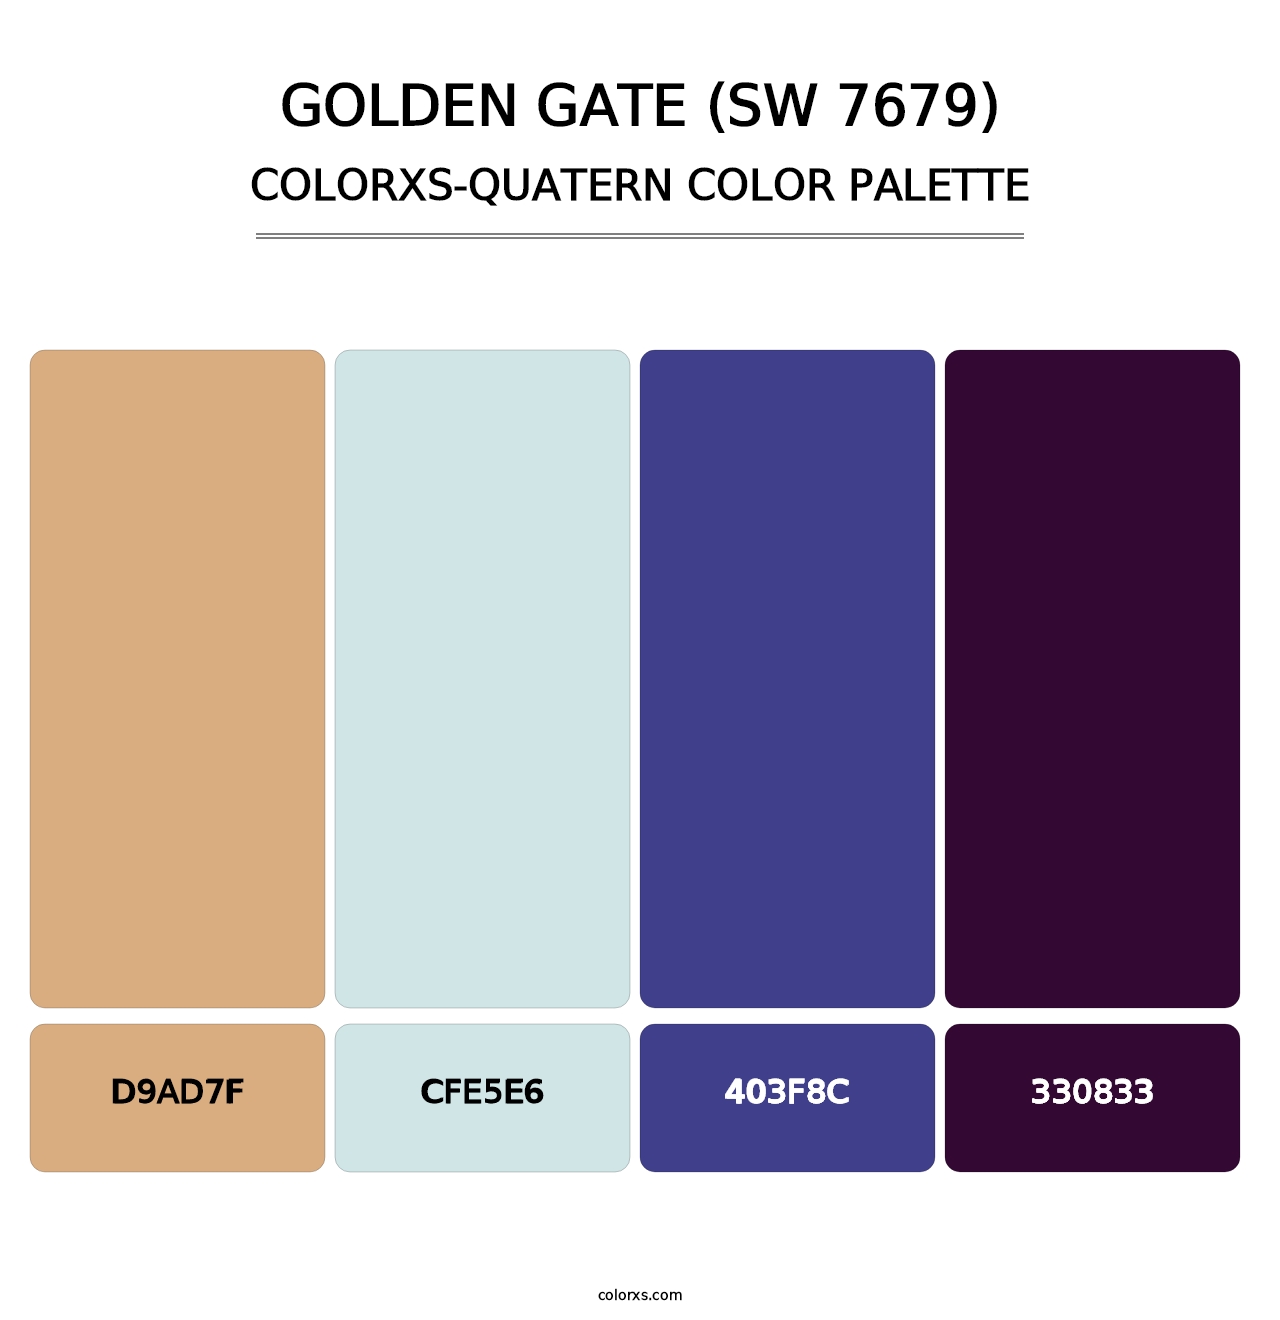 Golden Gate (SW 7679) - Colorxs Quatern Palette